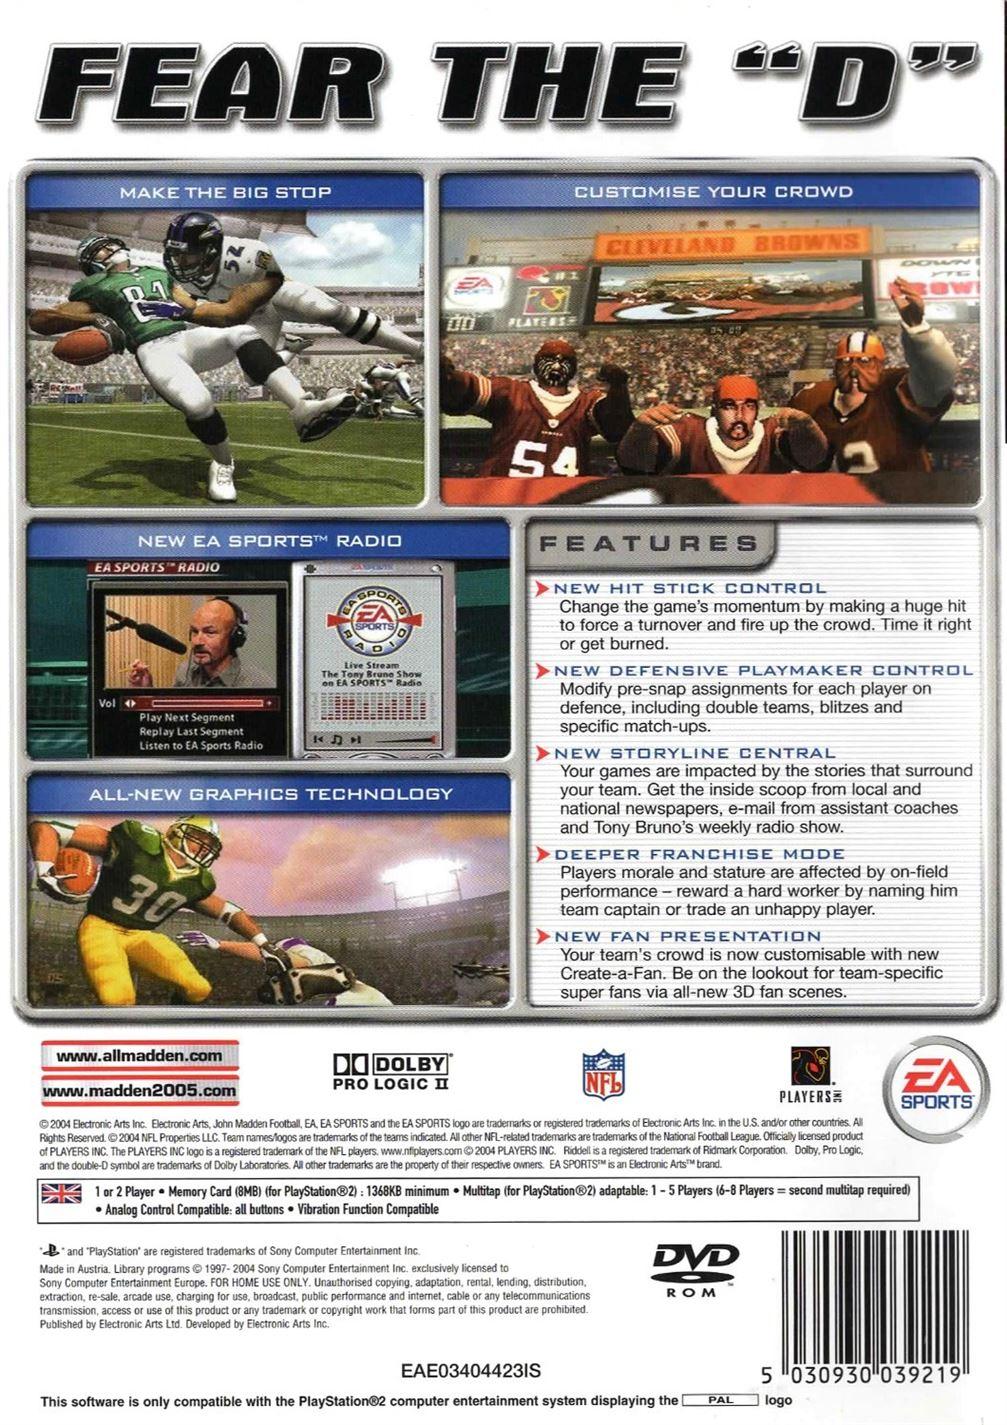 Madden NFL 2005 PS2 (Playstation 2) - UK Seller